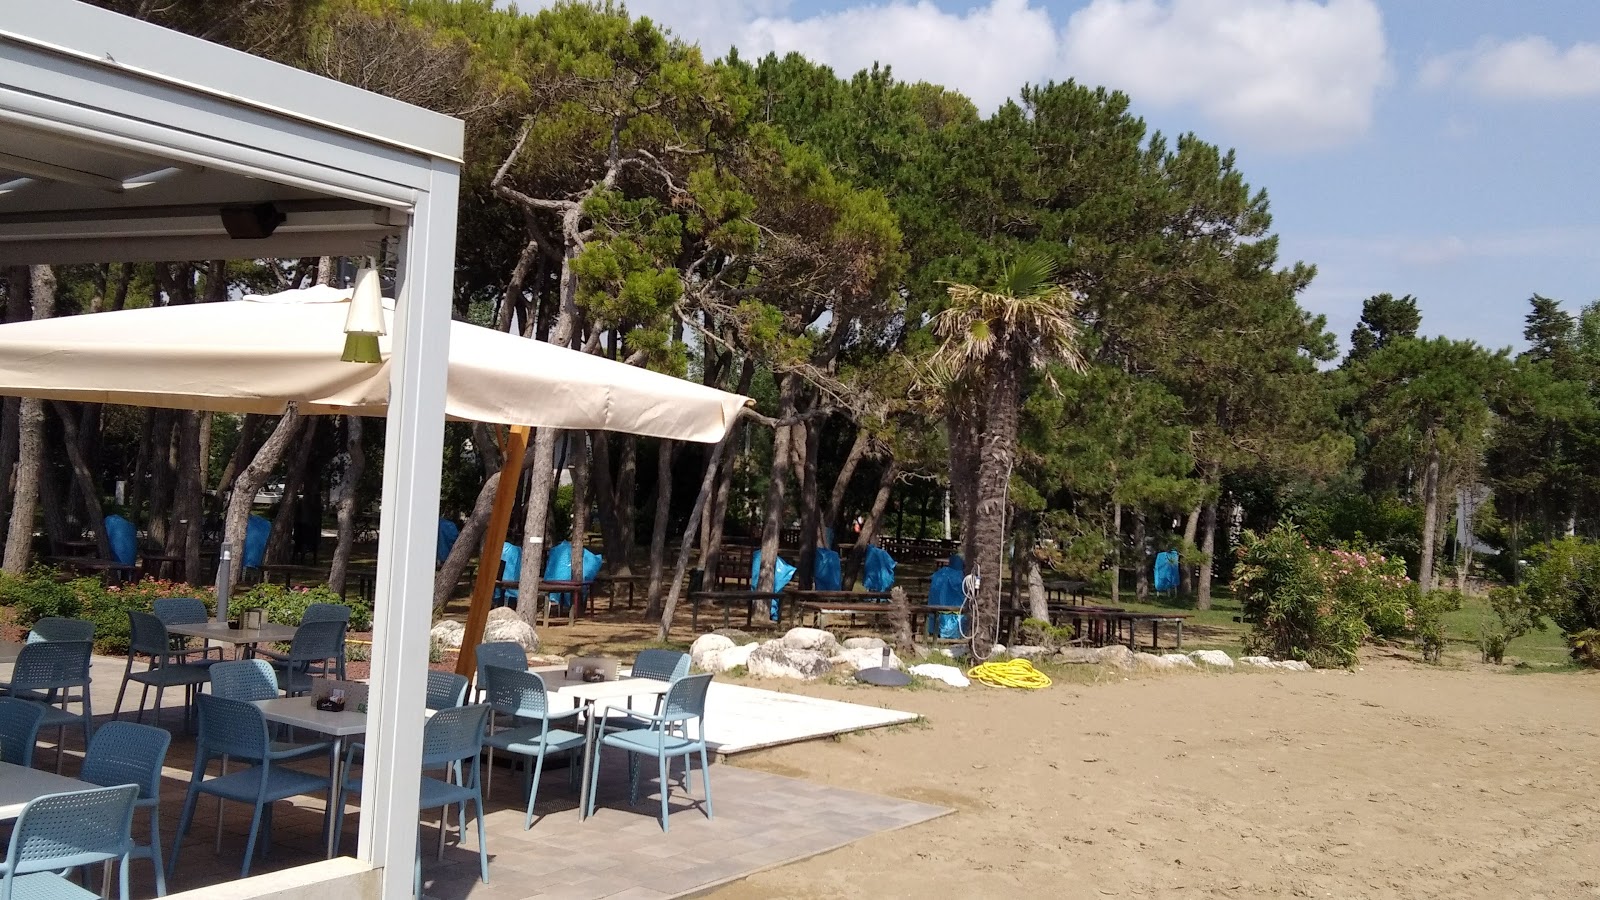 Foto de Spiaggia Libera Caorle - lugar popular entre los conocedores del relax